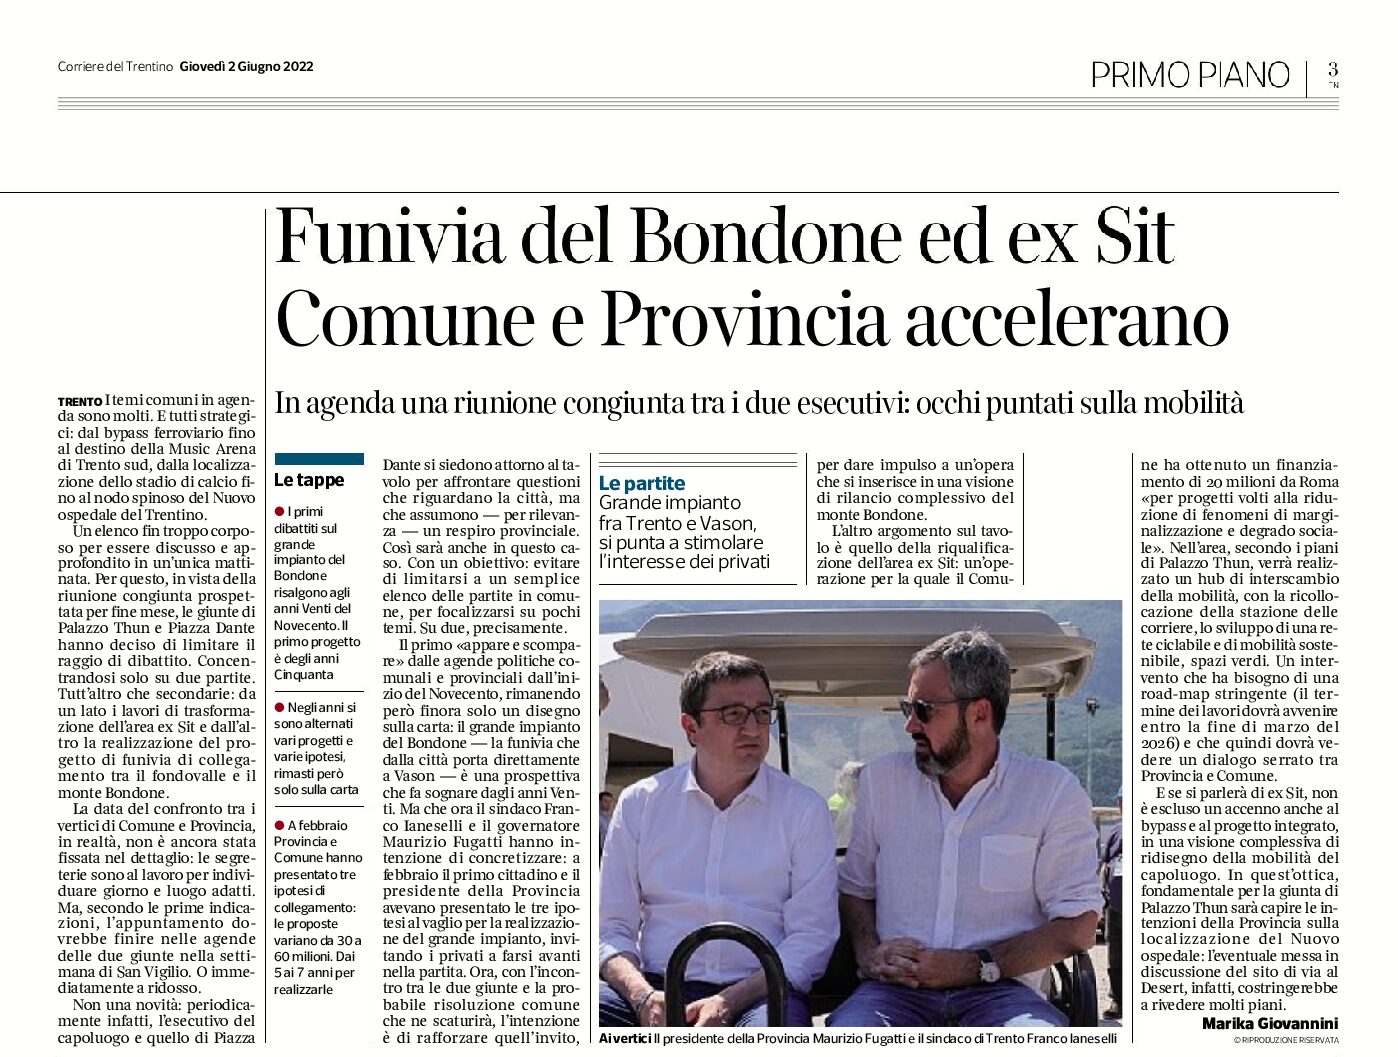 Trento: funivia del Bondone ed ex Sit. Comune e Provincia accelerano